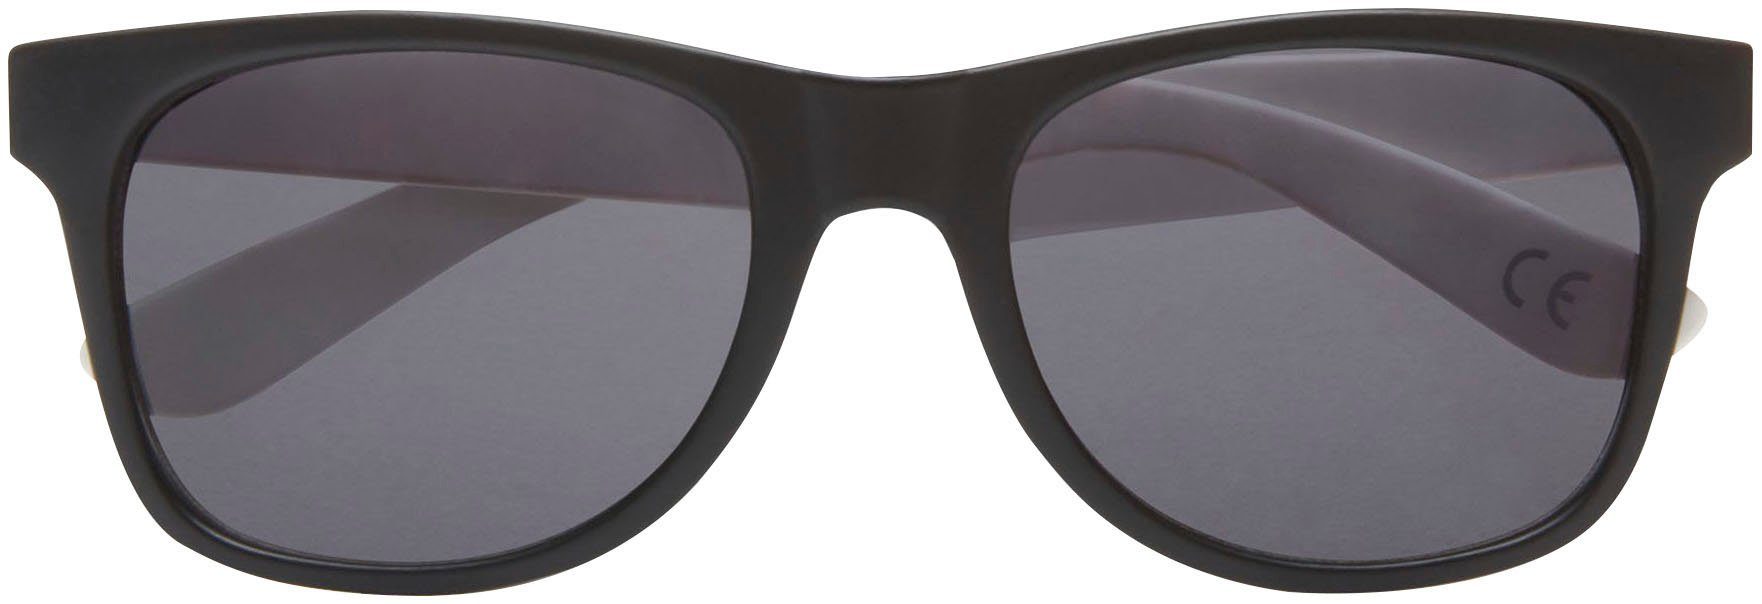 Vans Sonnenbrille SPICOLI 4 SHADES schwarz weiß | Sonnenbrillen